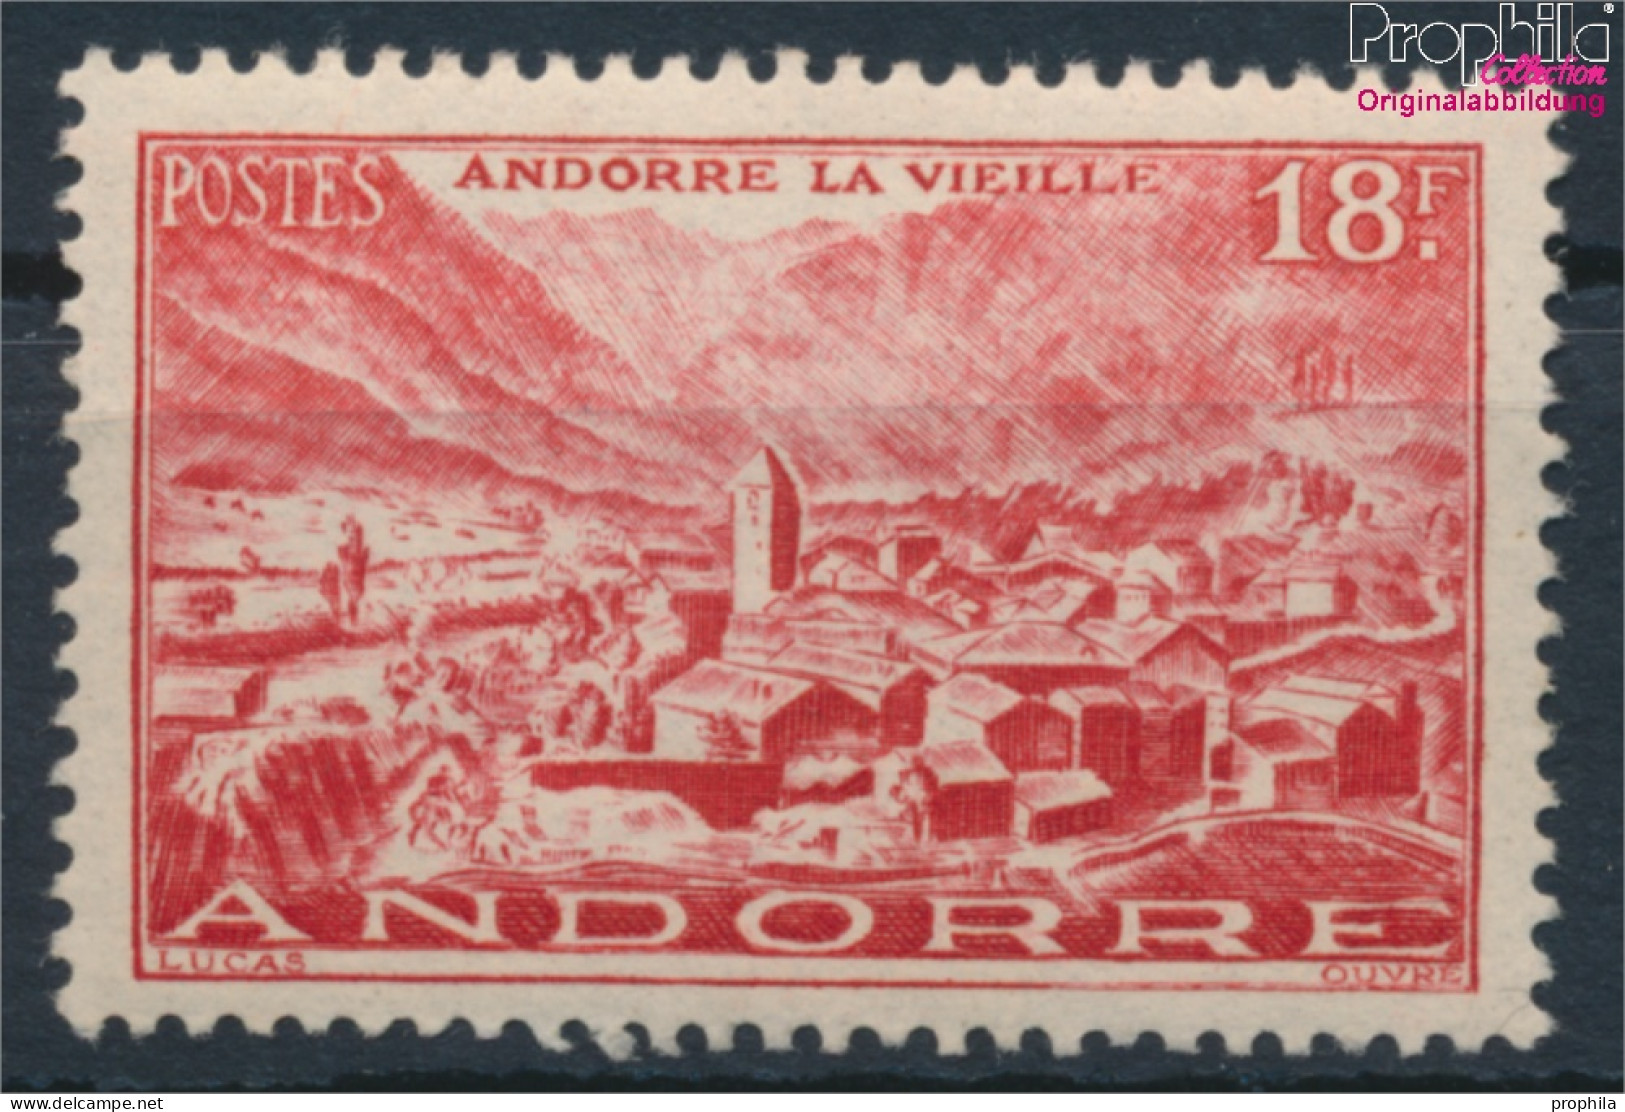 Andorra - Französische Post 133 Postfrisch 1944 Landschaften (10368400 - Unused Stamps